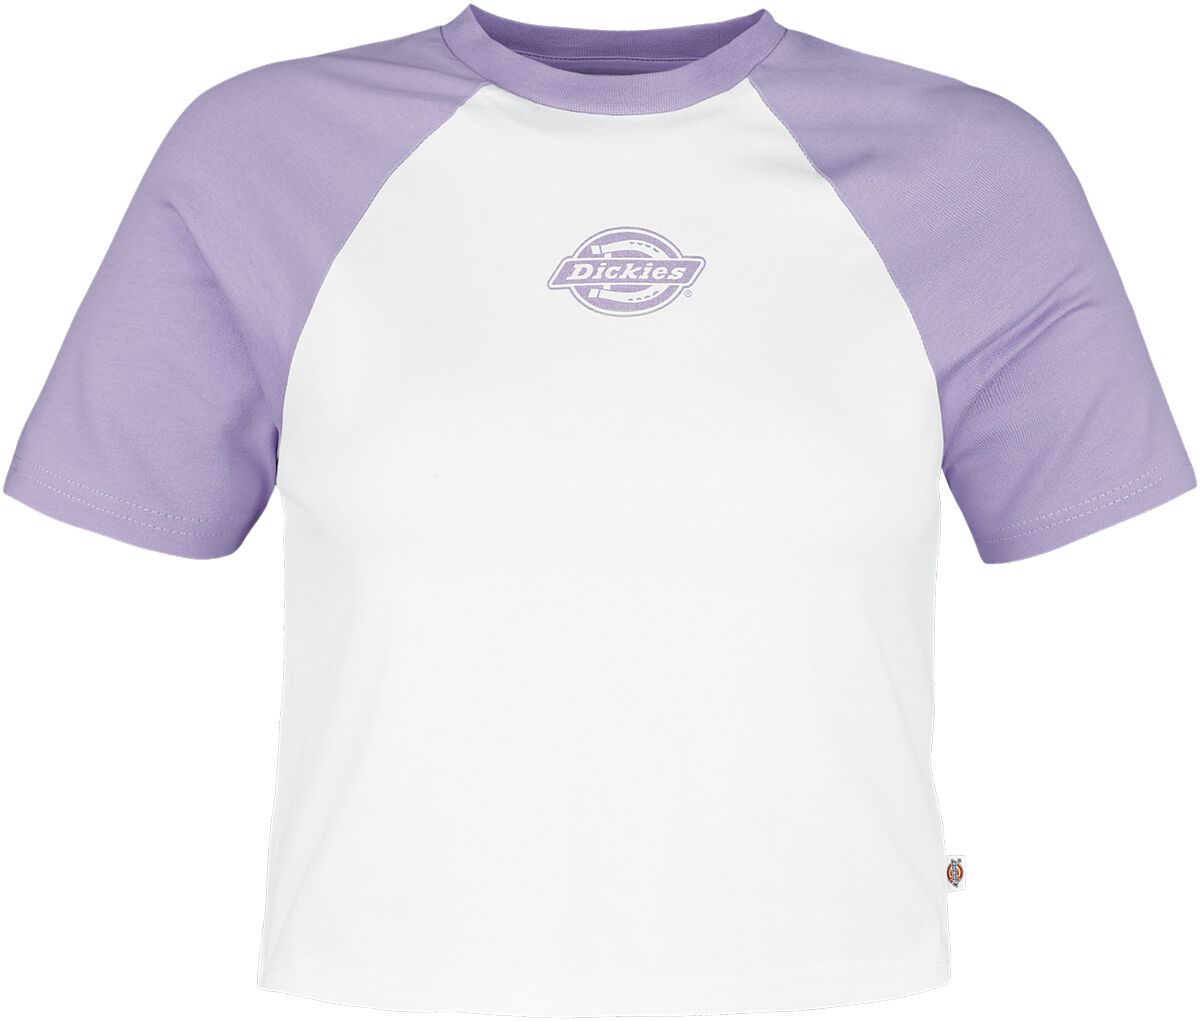 T-Shirt Manches courtes de Dickies - Sodaville Tee - XS à L - pour Femme - violet/blanc